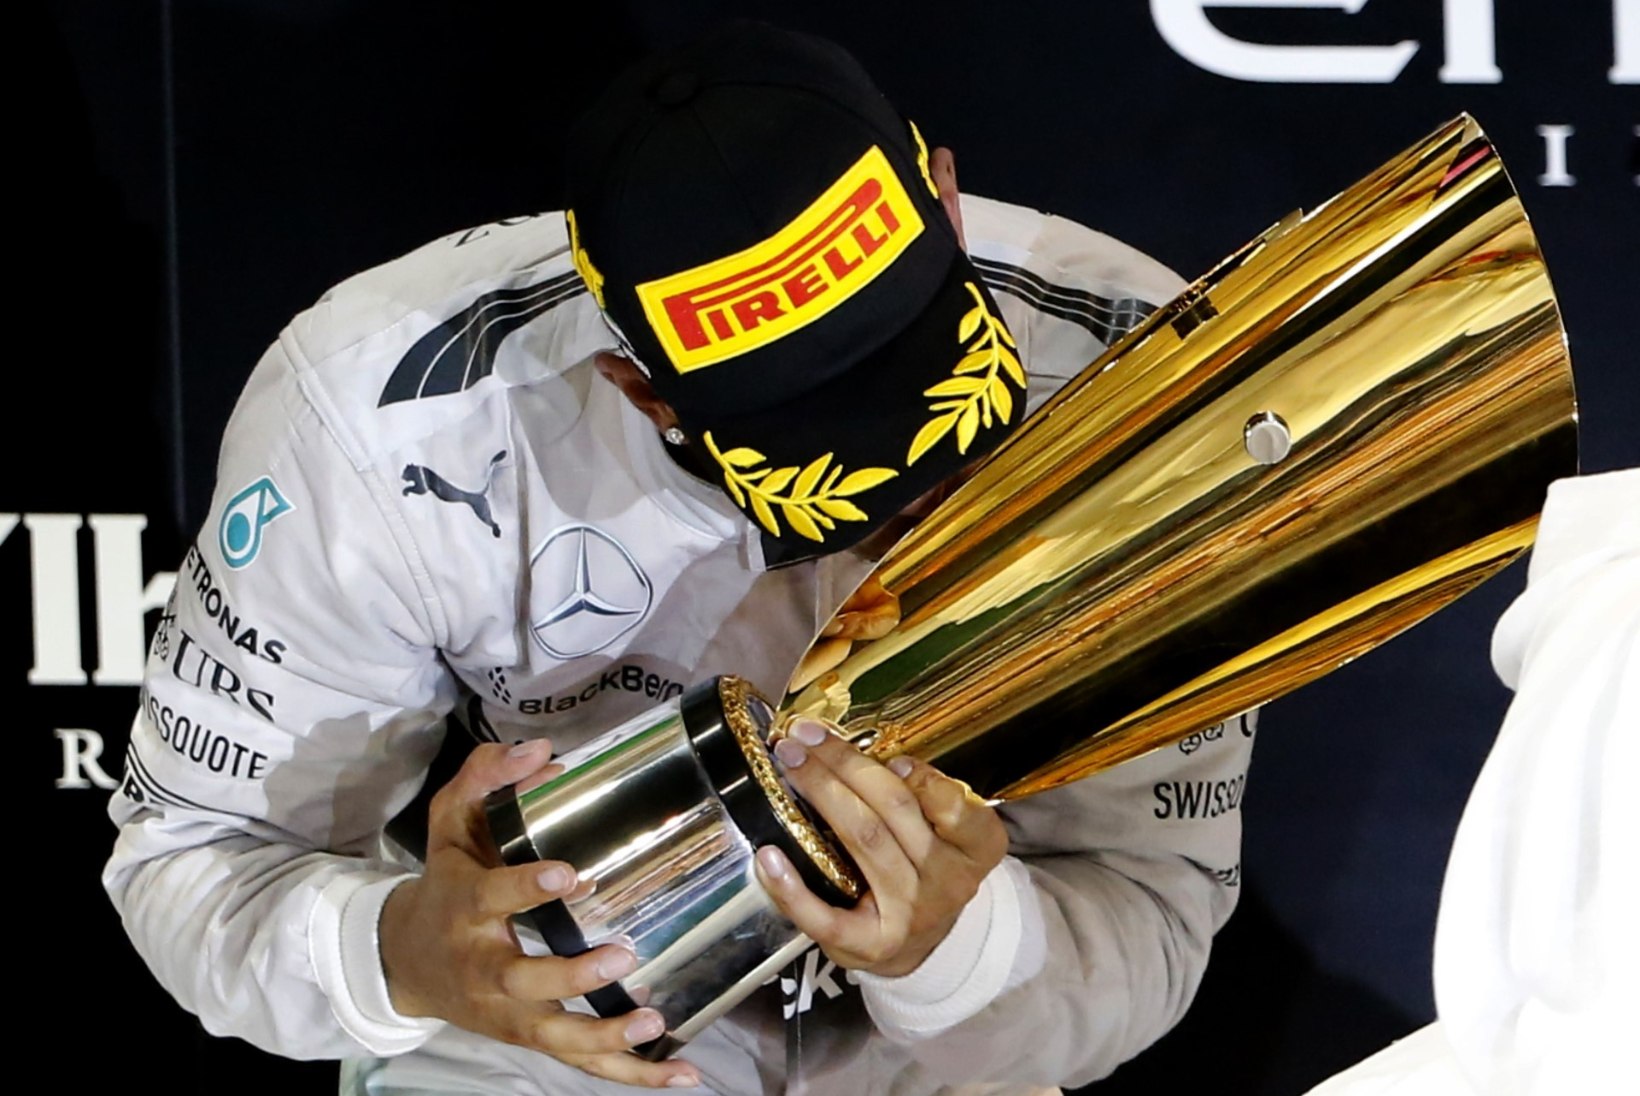 20 FOTOT: Lewis Hamiltoni teekond tänavuseks maailmameistriks